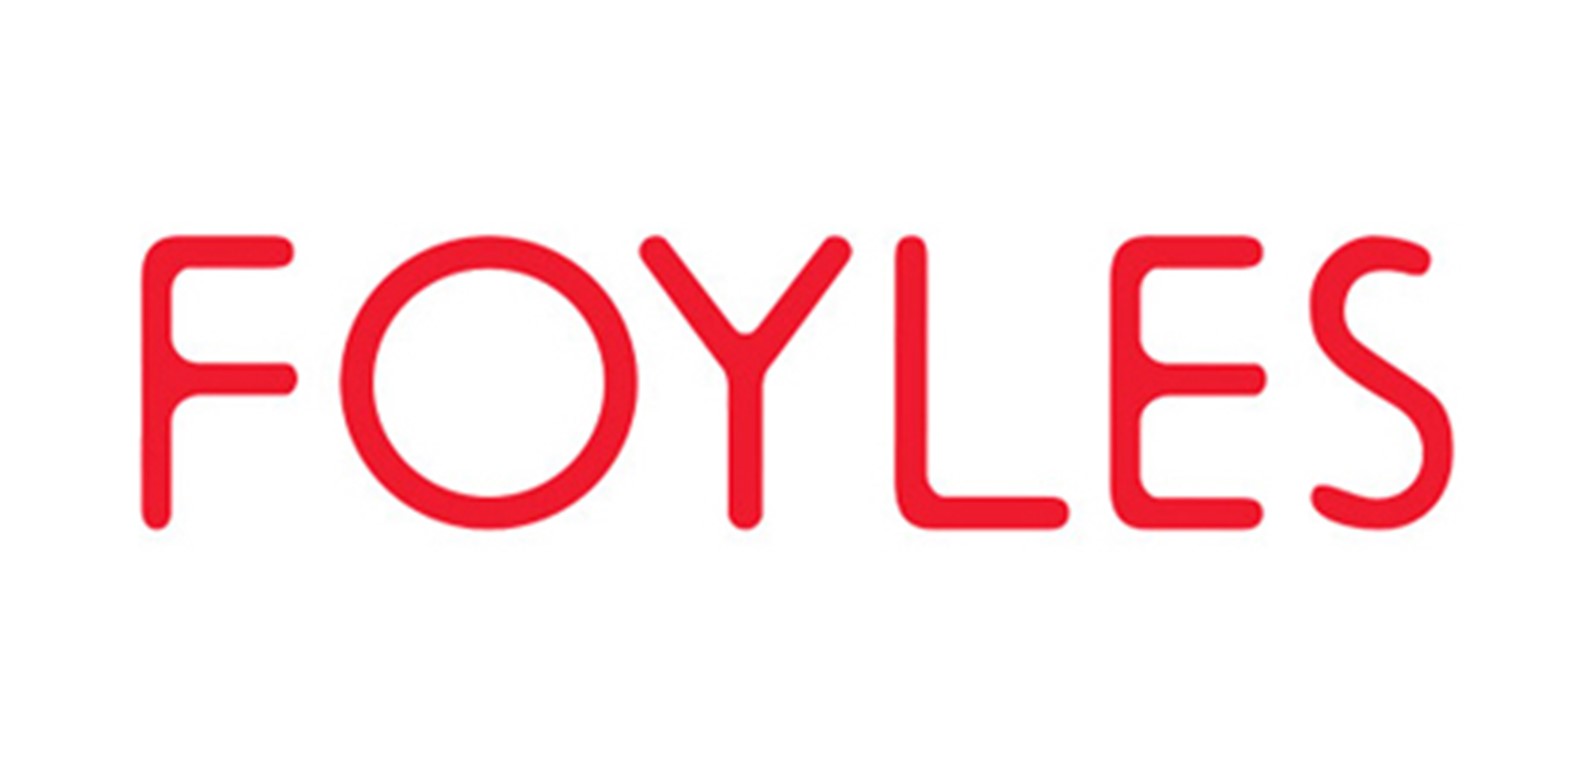 Foyles (W G Foyle Ltd)  London Westfield Stratford